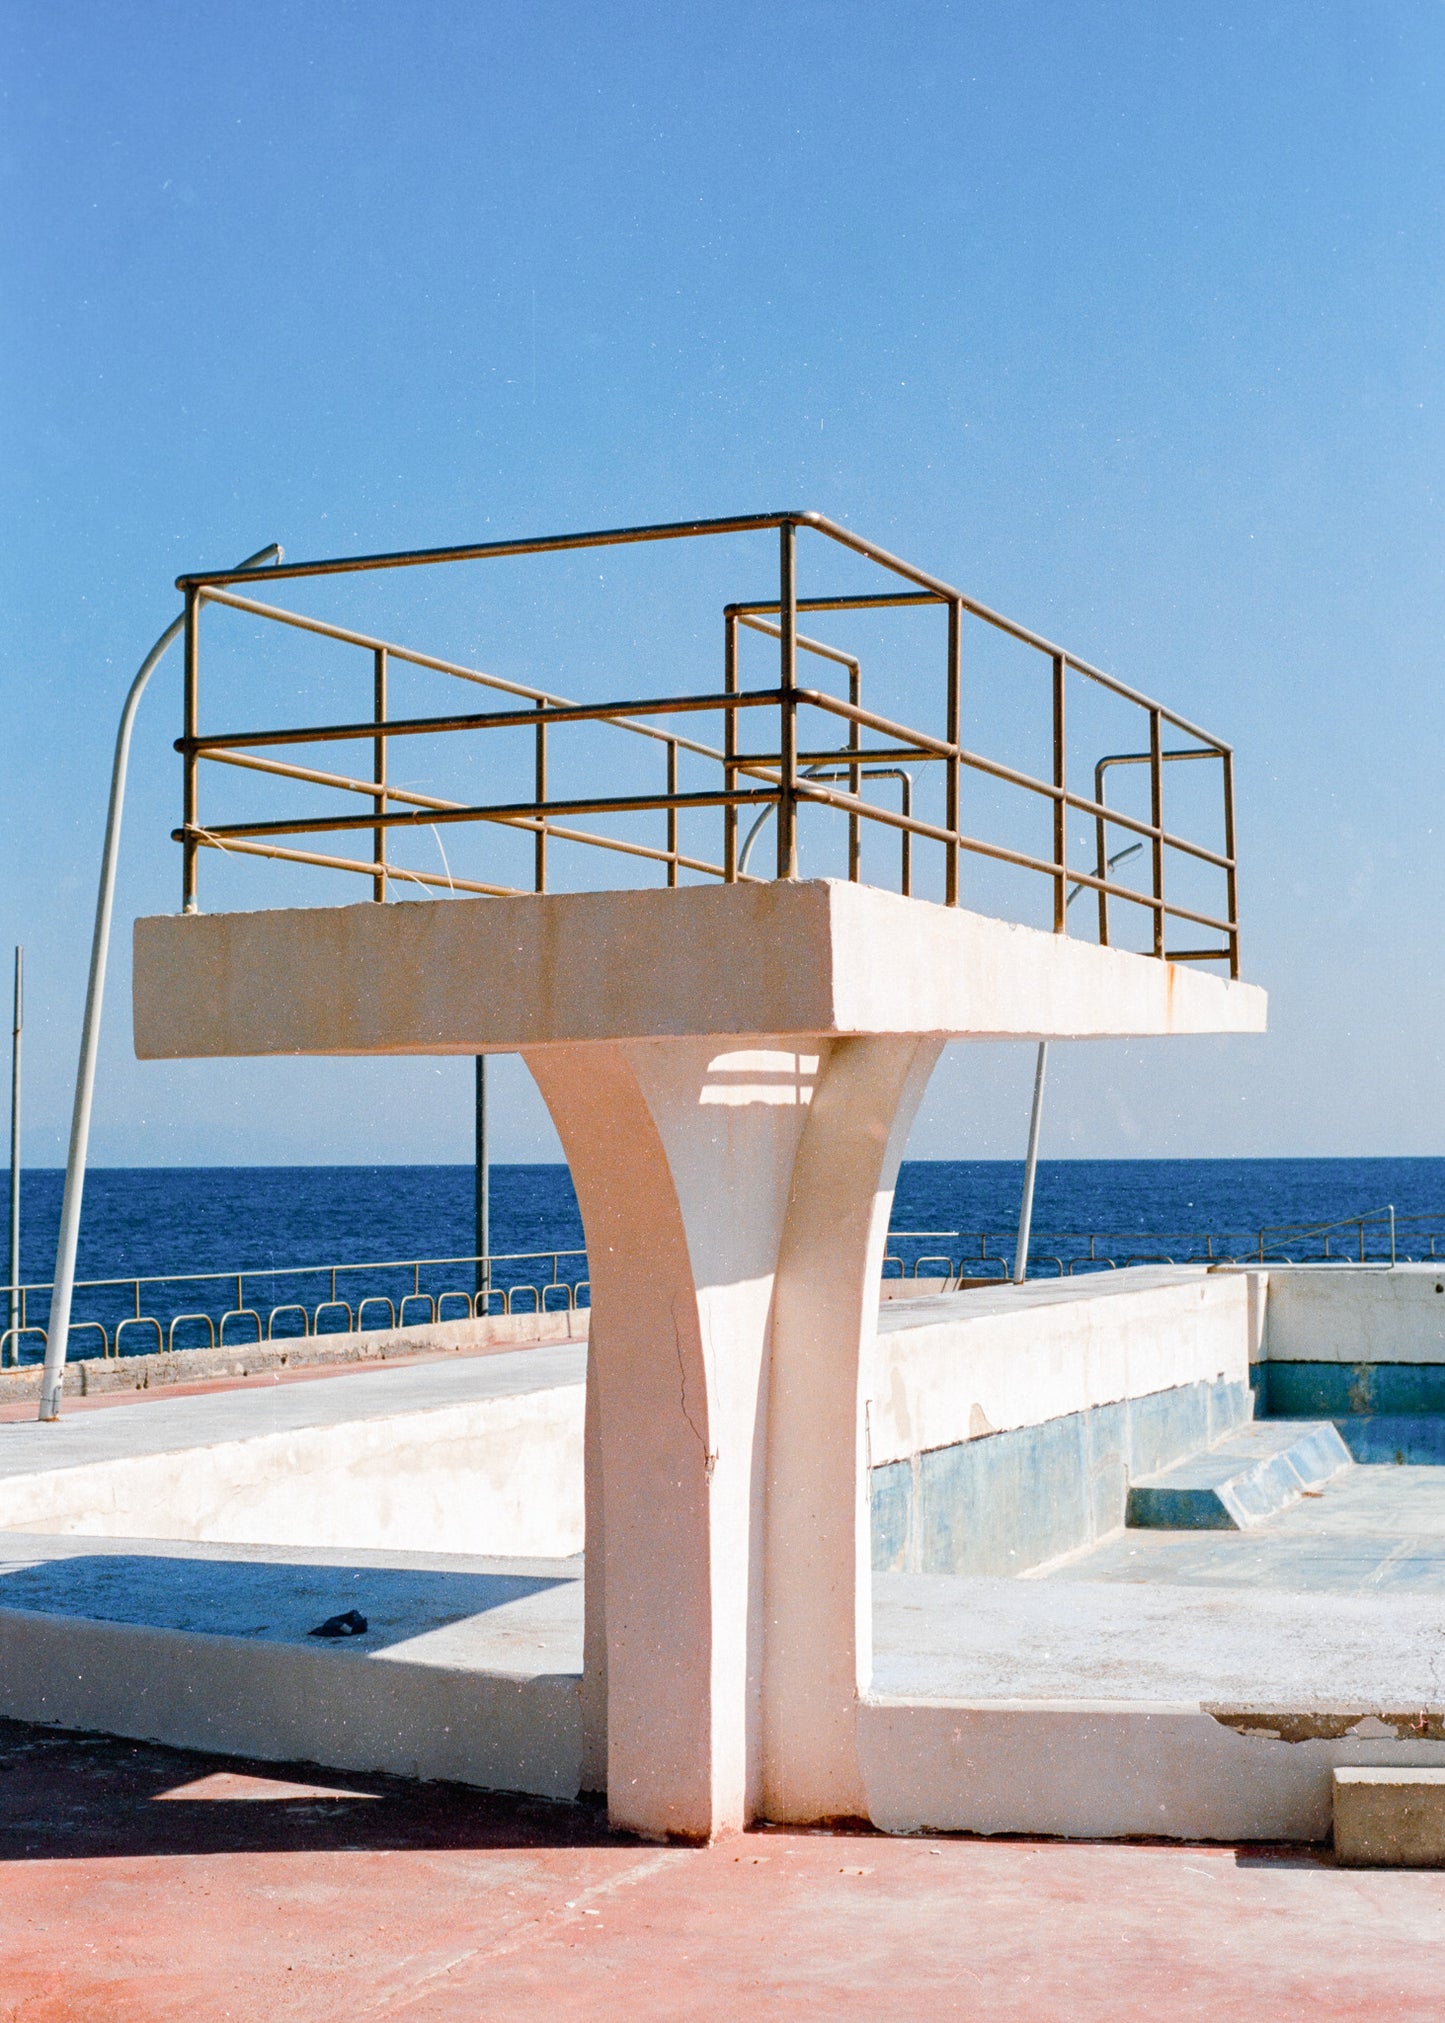 Analoges Foto als Kunstdruck. Ein Sprungturm steht vor einem leeren, verlassenen Pool. Dahinter ist das Mittelmeer zu sehen.